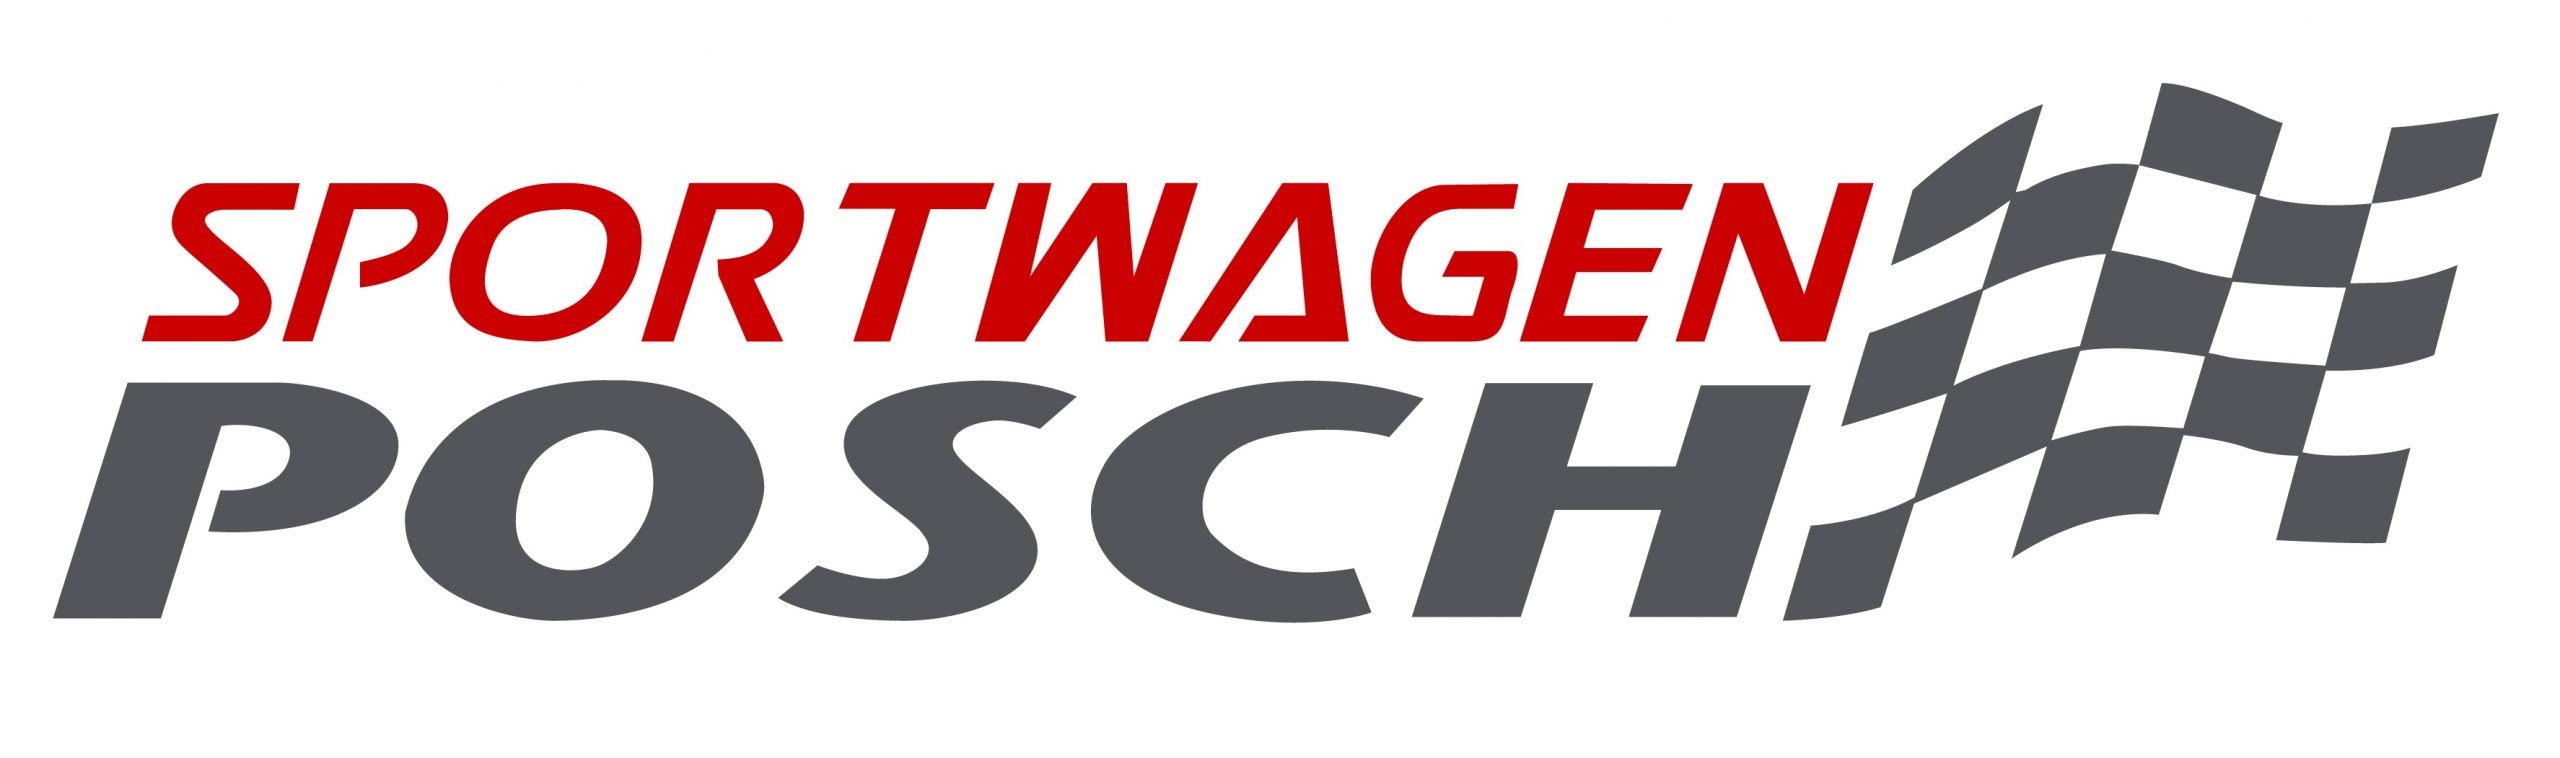 Sportwagen-Posch-Nordheim